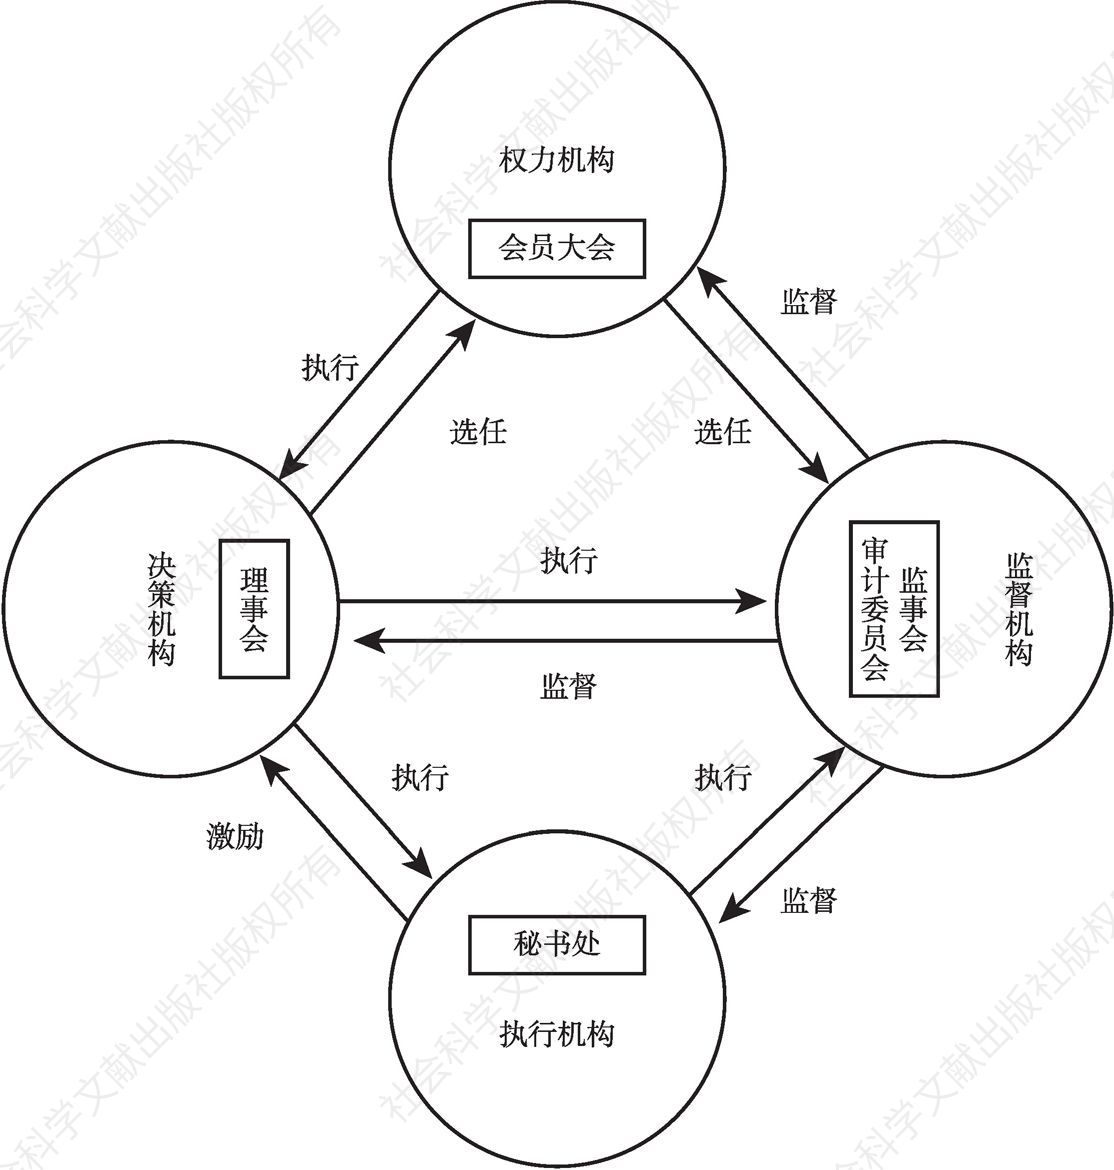 图6-2 完善的社会组织内部治理结构